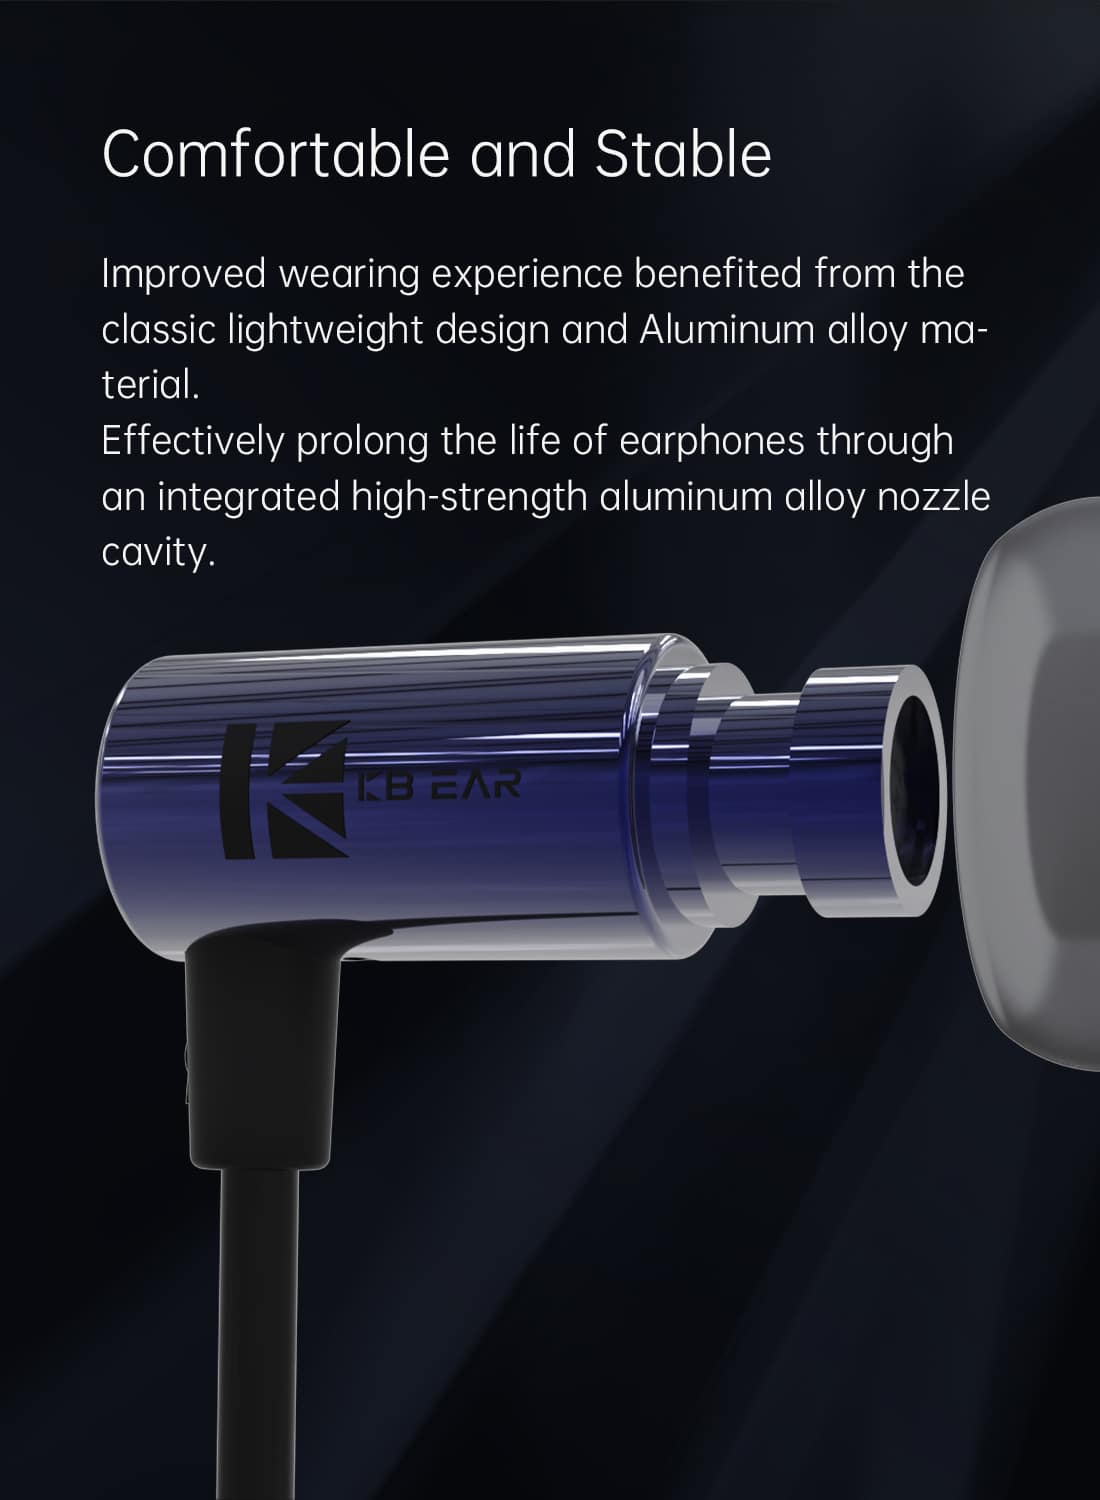 KBEAR Little Q 6mm Composite Diaphragm Lightweight Headphone 4